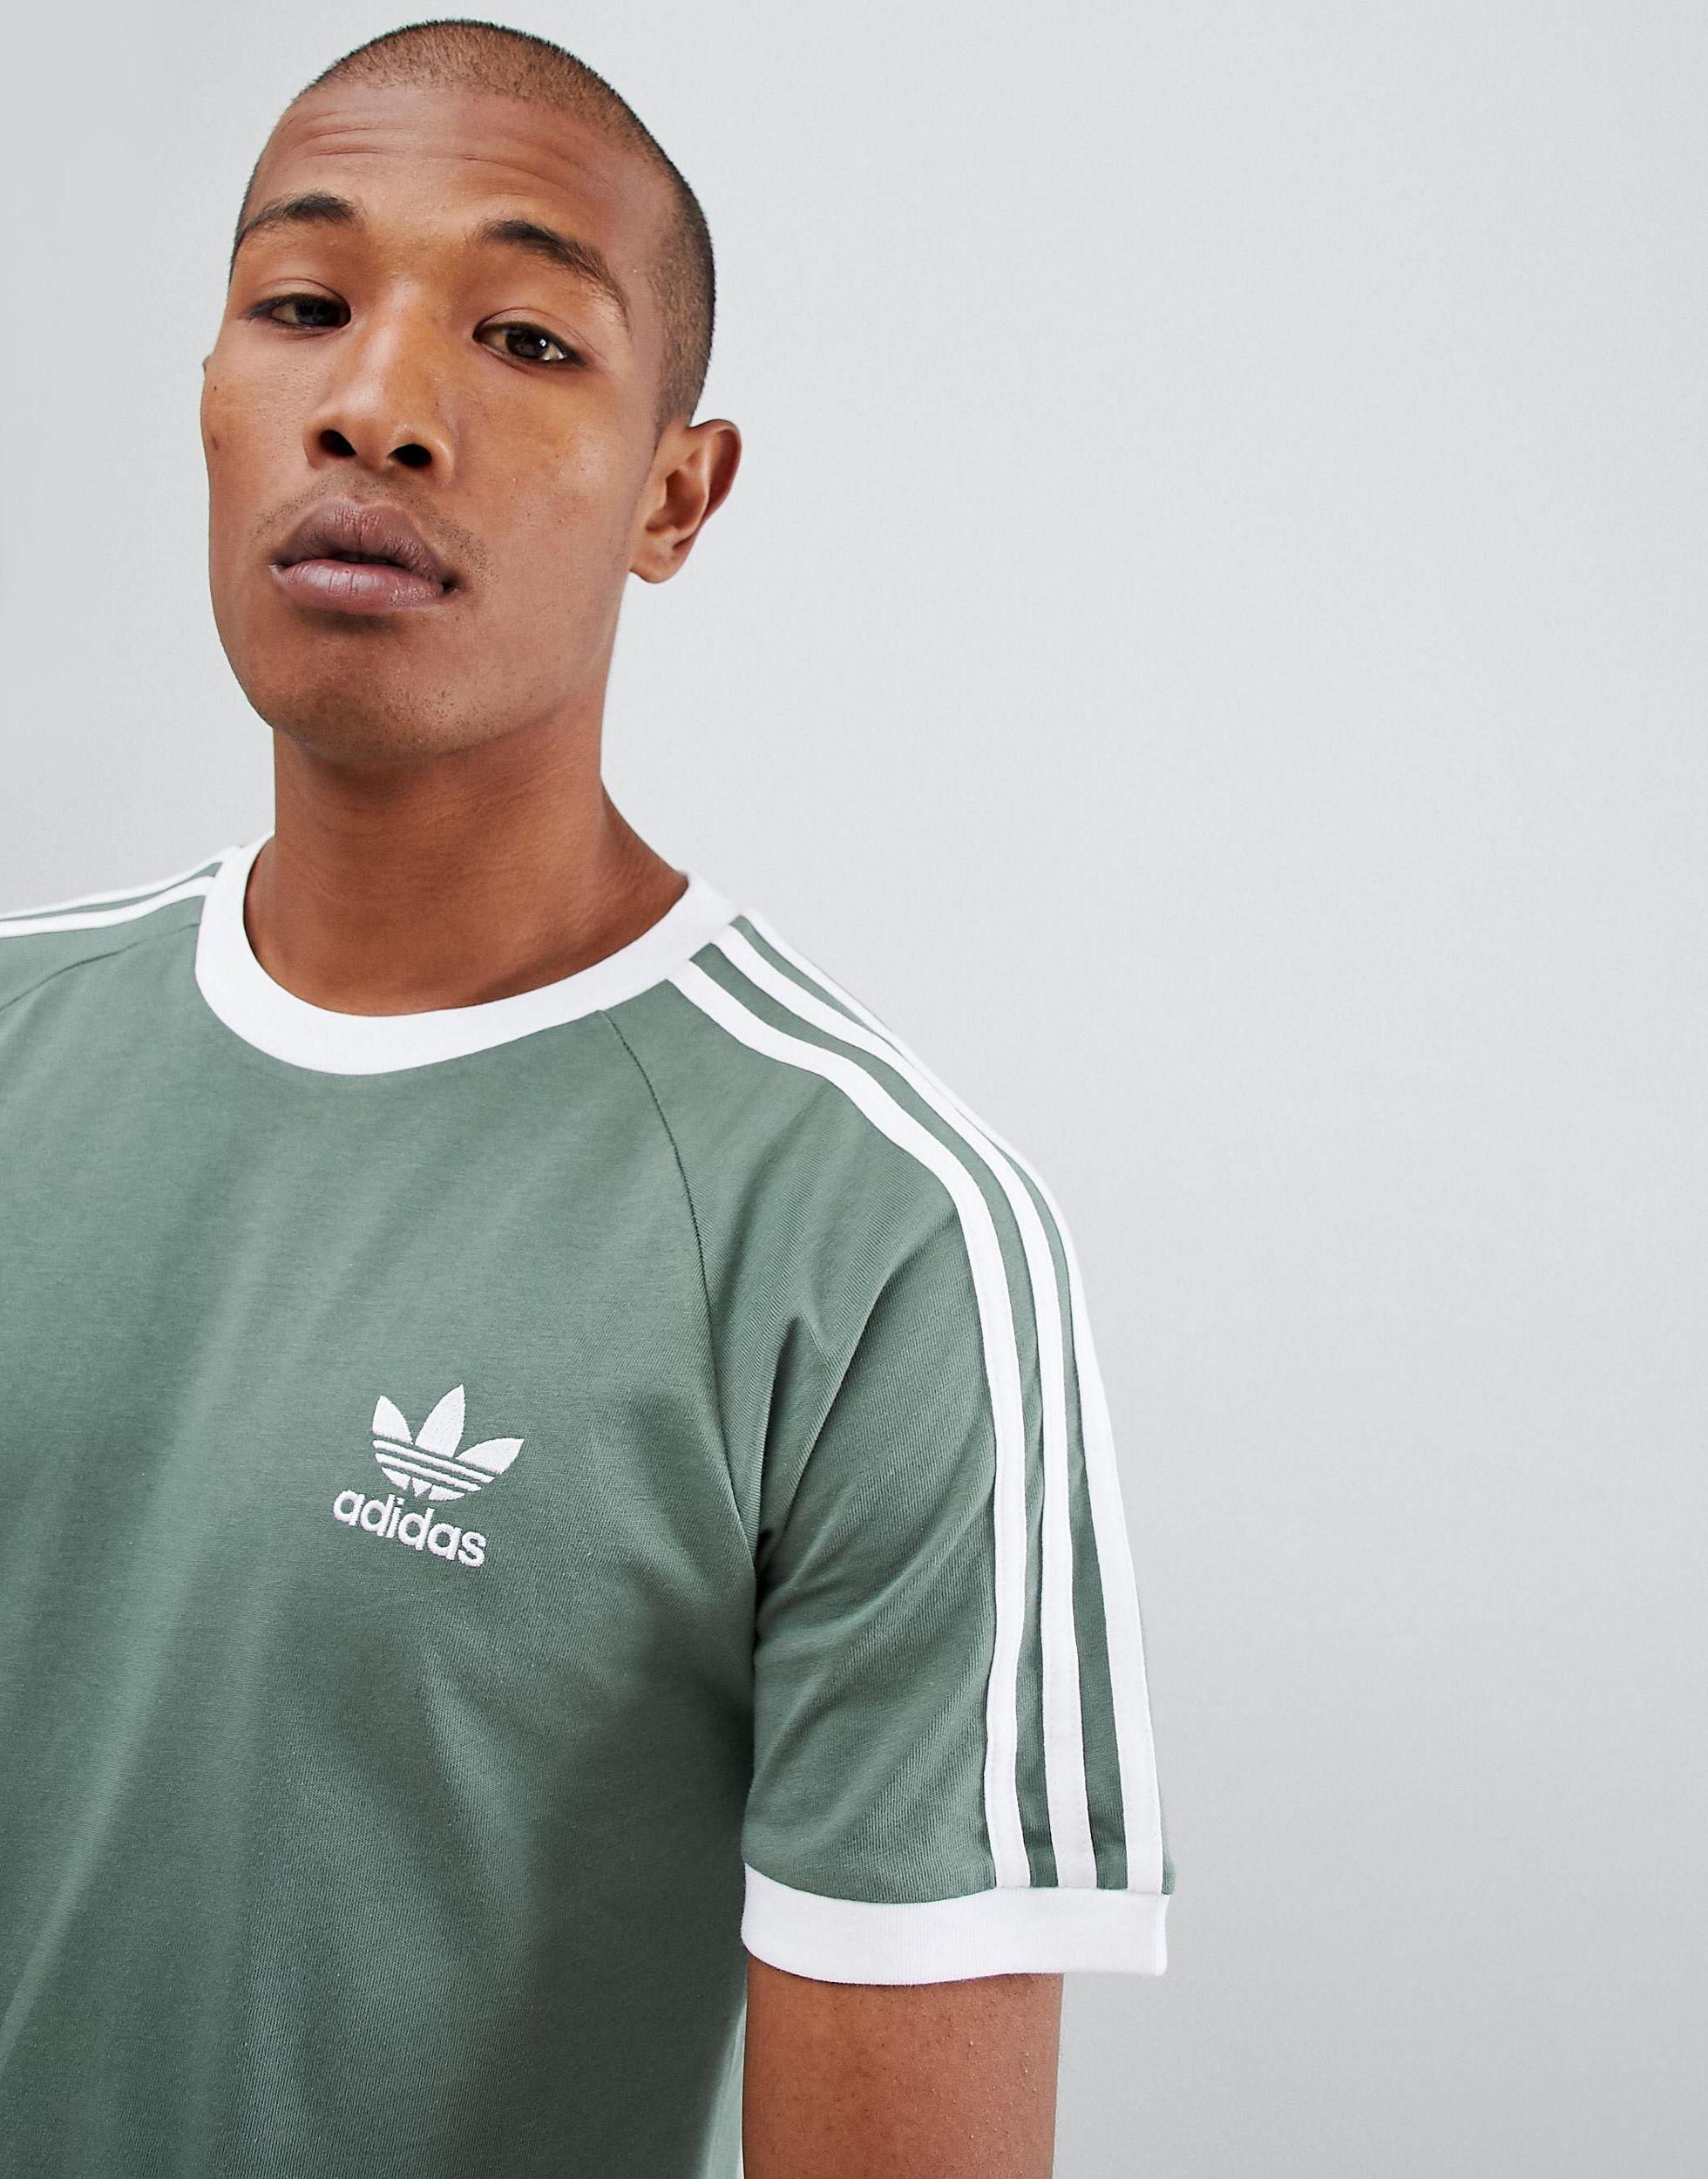 voor eeuwig ginder heroïsch adidas Originals California T-shirt in Green for Men | Lyst